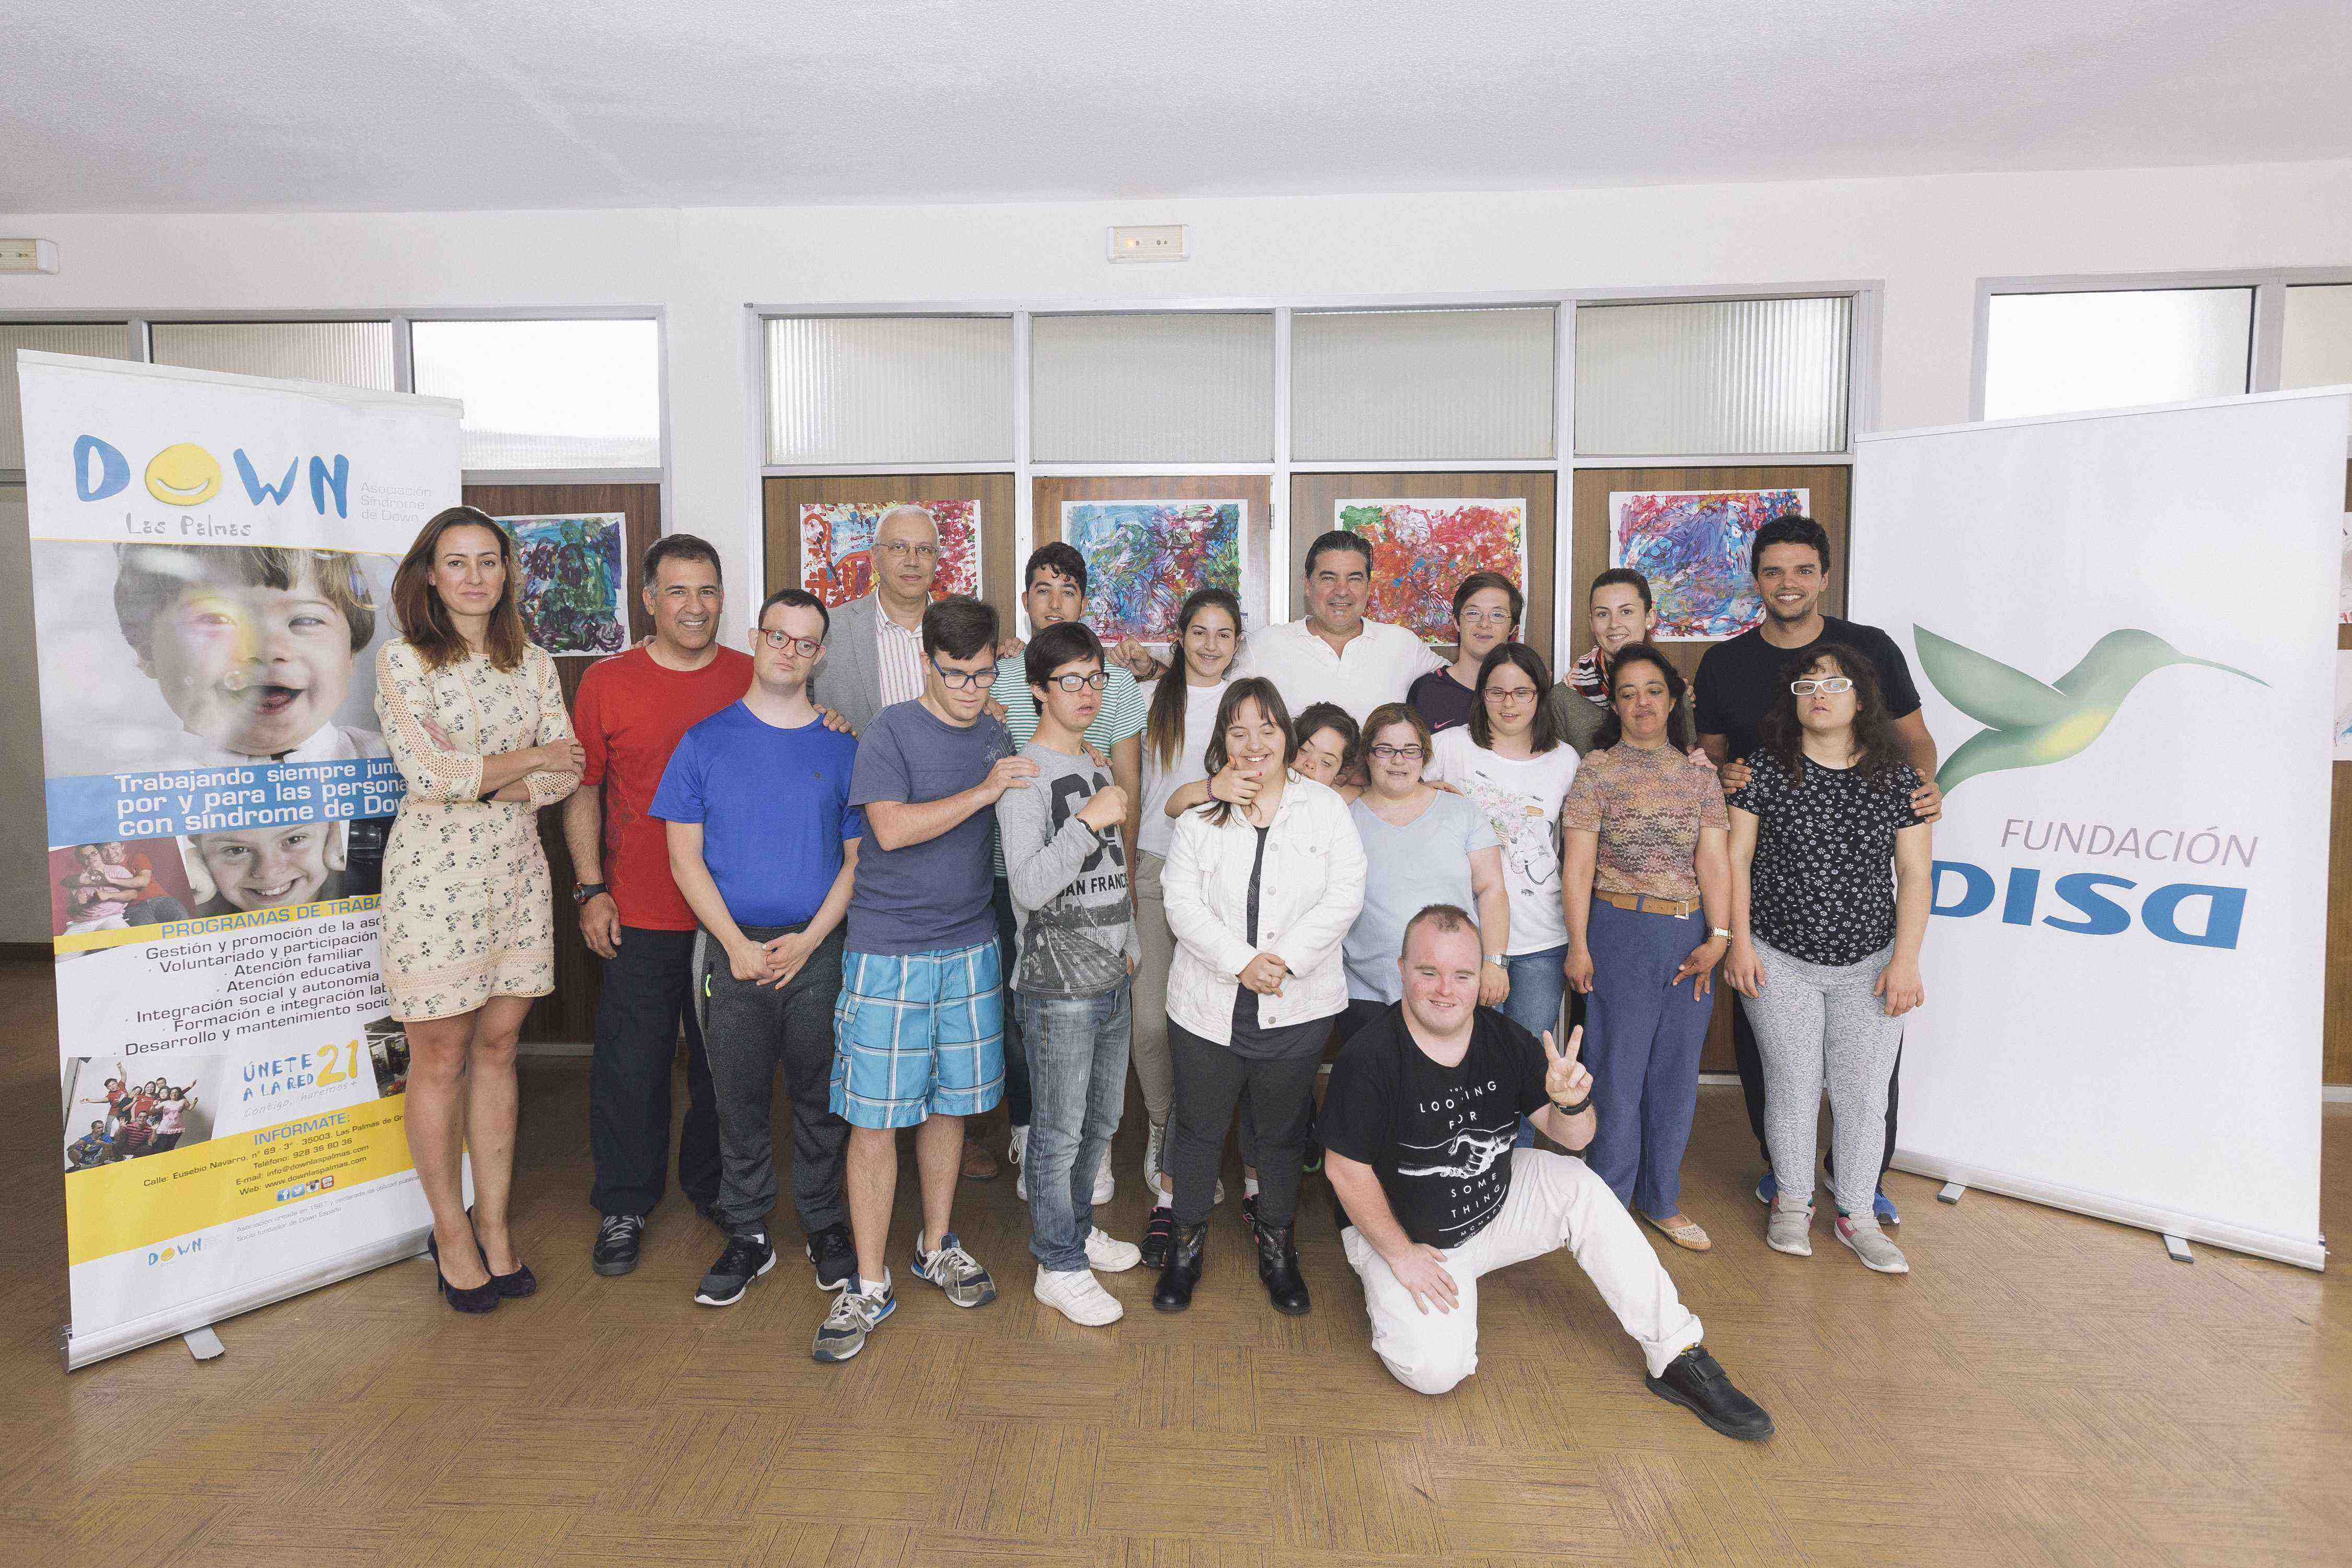 Comienza la 2ª edición del ‘Taller de Teatro Inclusivo’ de la Fundación DISA y Down Las Palmas